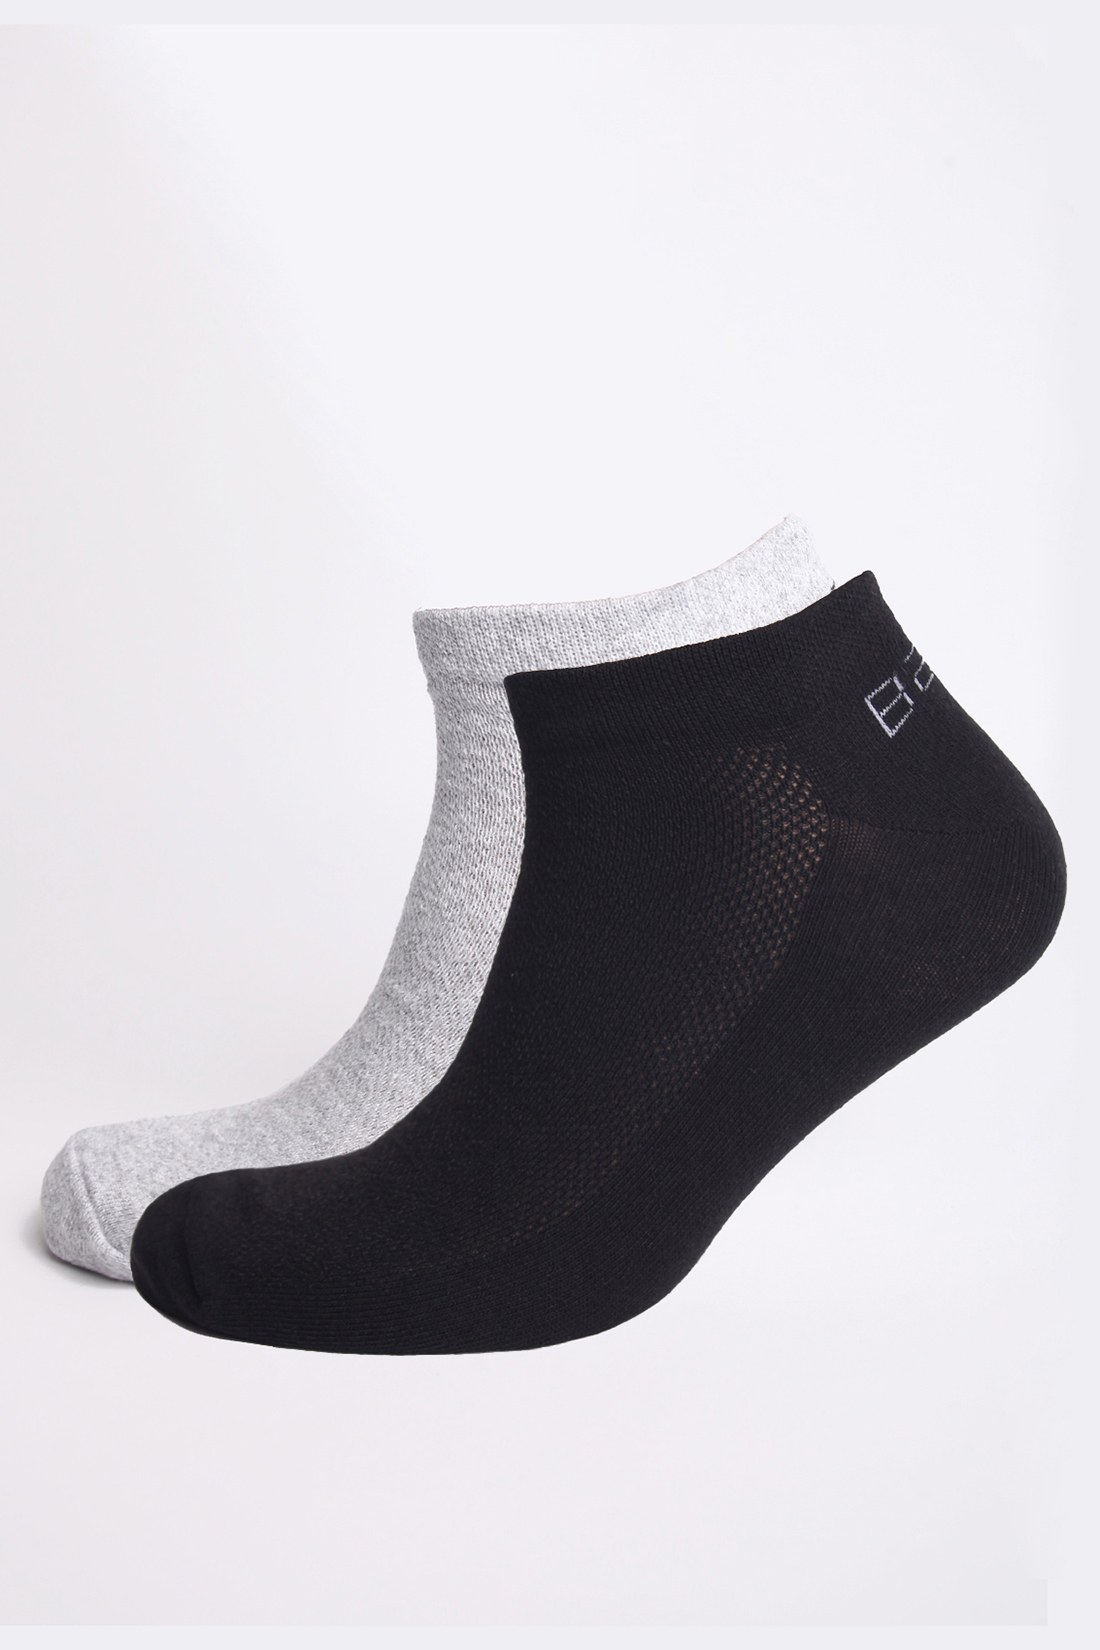 Мужские носки, 2 пары (арт. baon B891105), размер 43/45, цвет серый